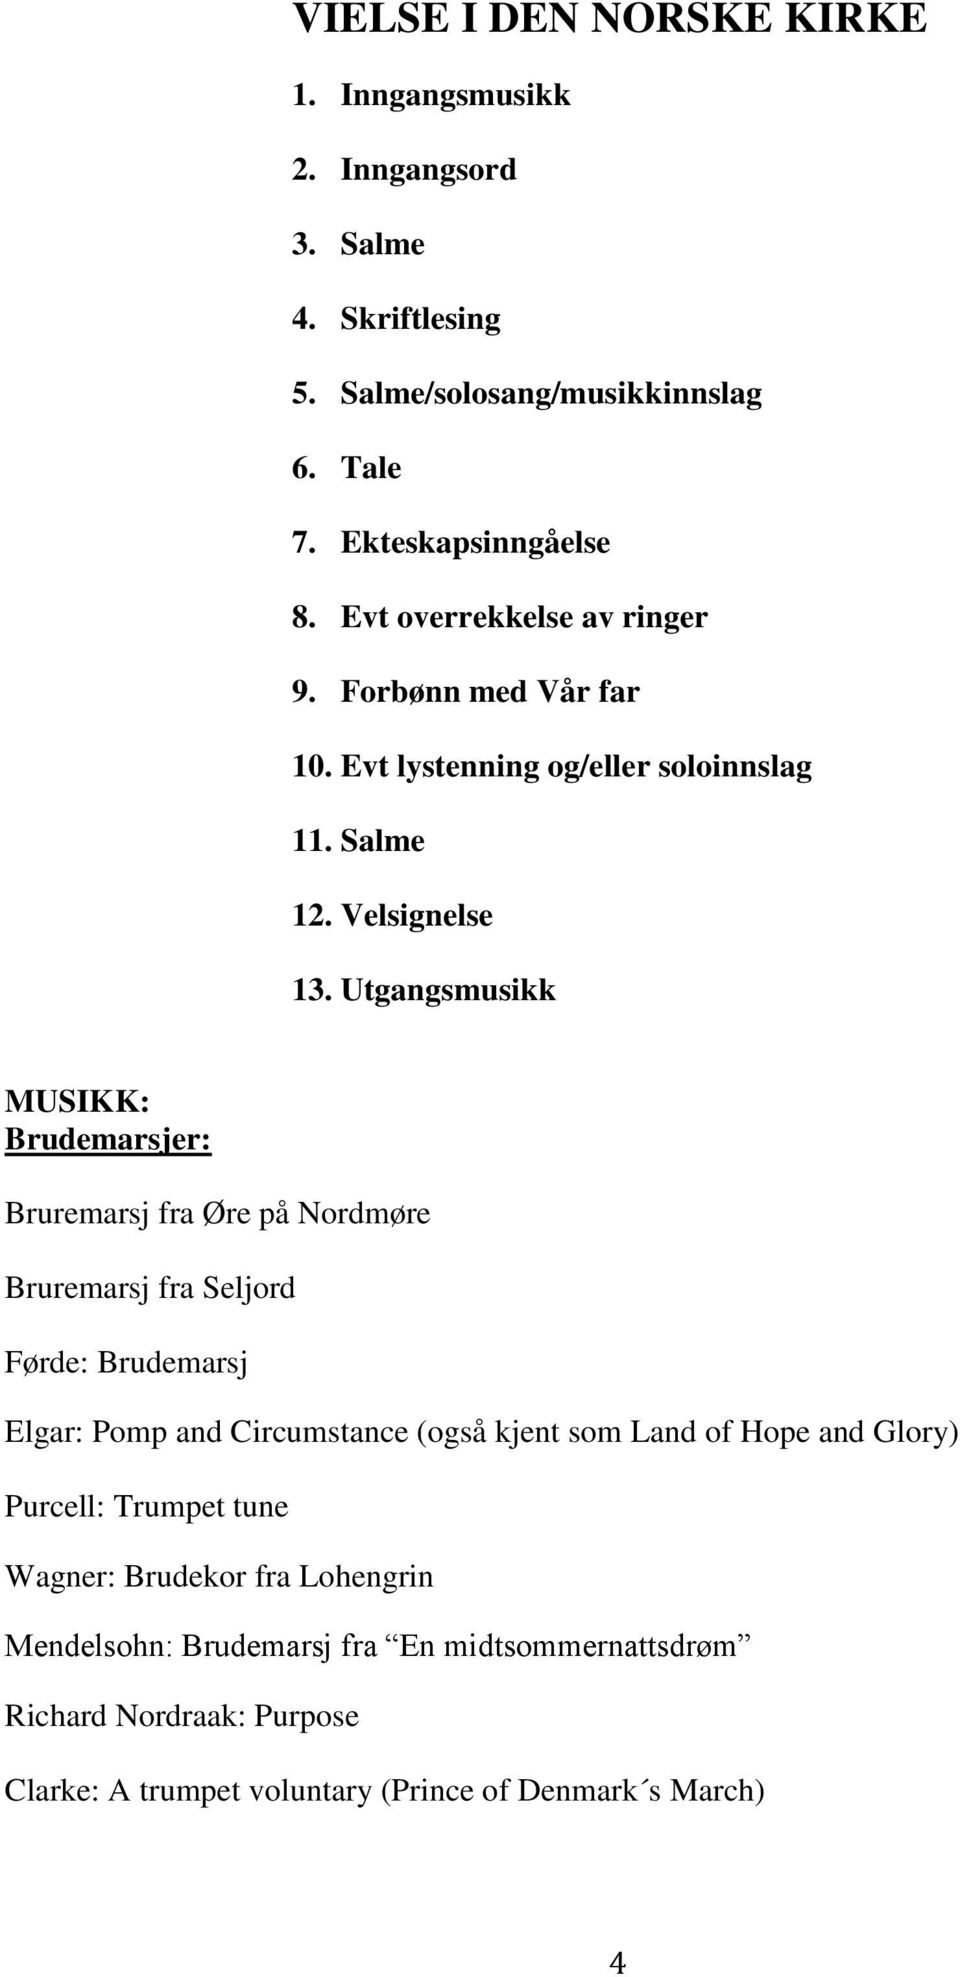 Utgangsmusikk MUSIKK: Brudemarsjer: Bruremarsj fra Øre på Nordmøre Bruremarsj fra Seljord Førde: Brudemarsj Elgar: Pomp and Circumstance (også kjent som Land